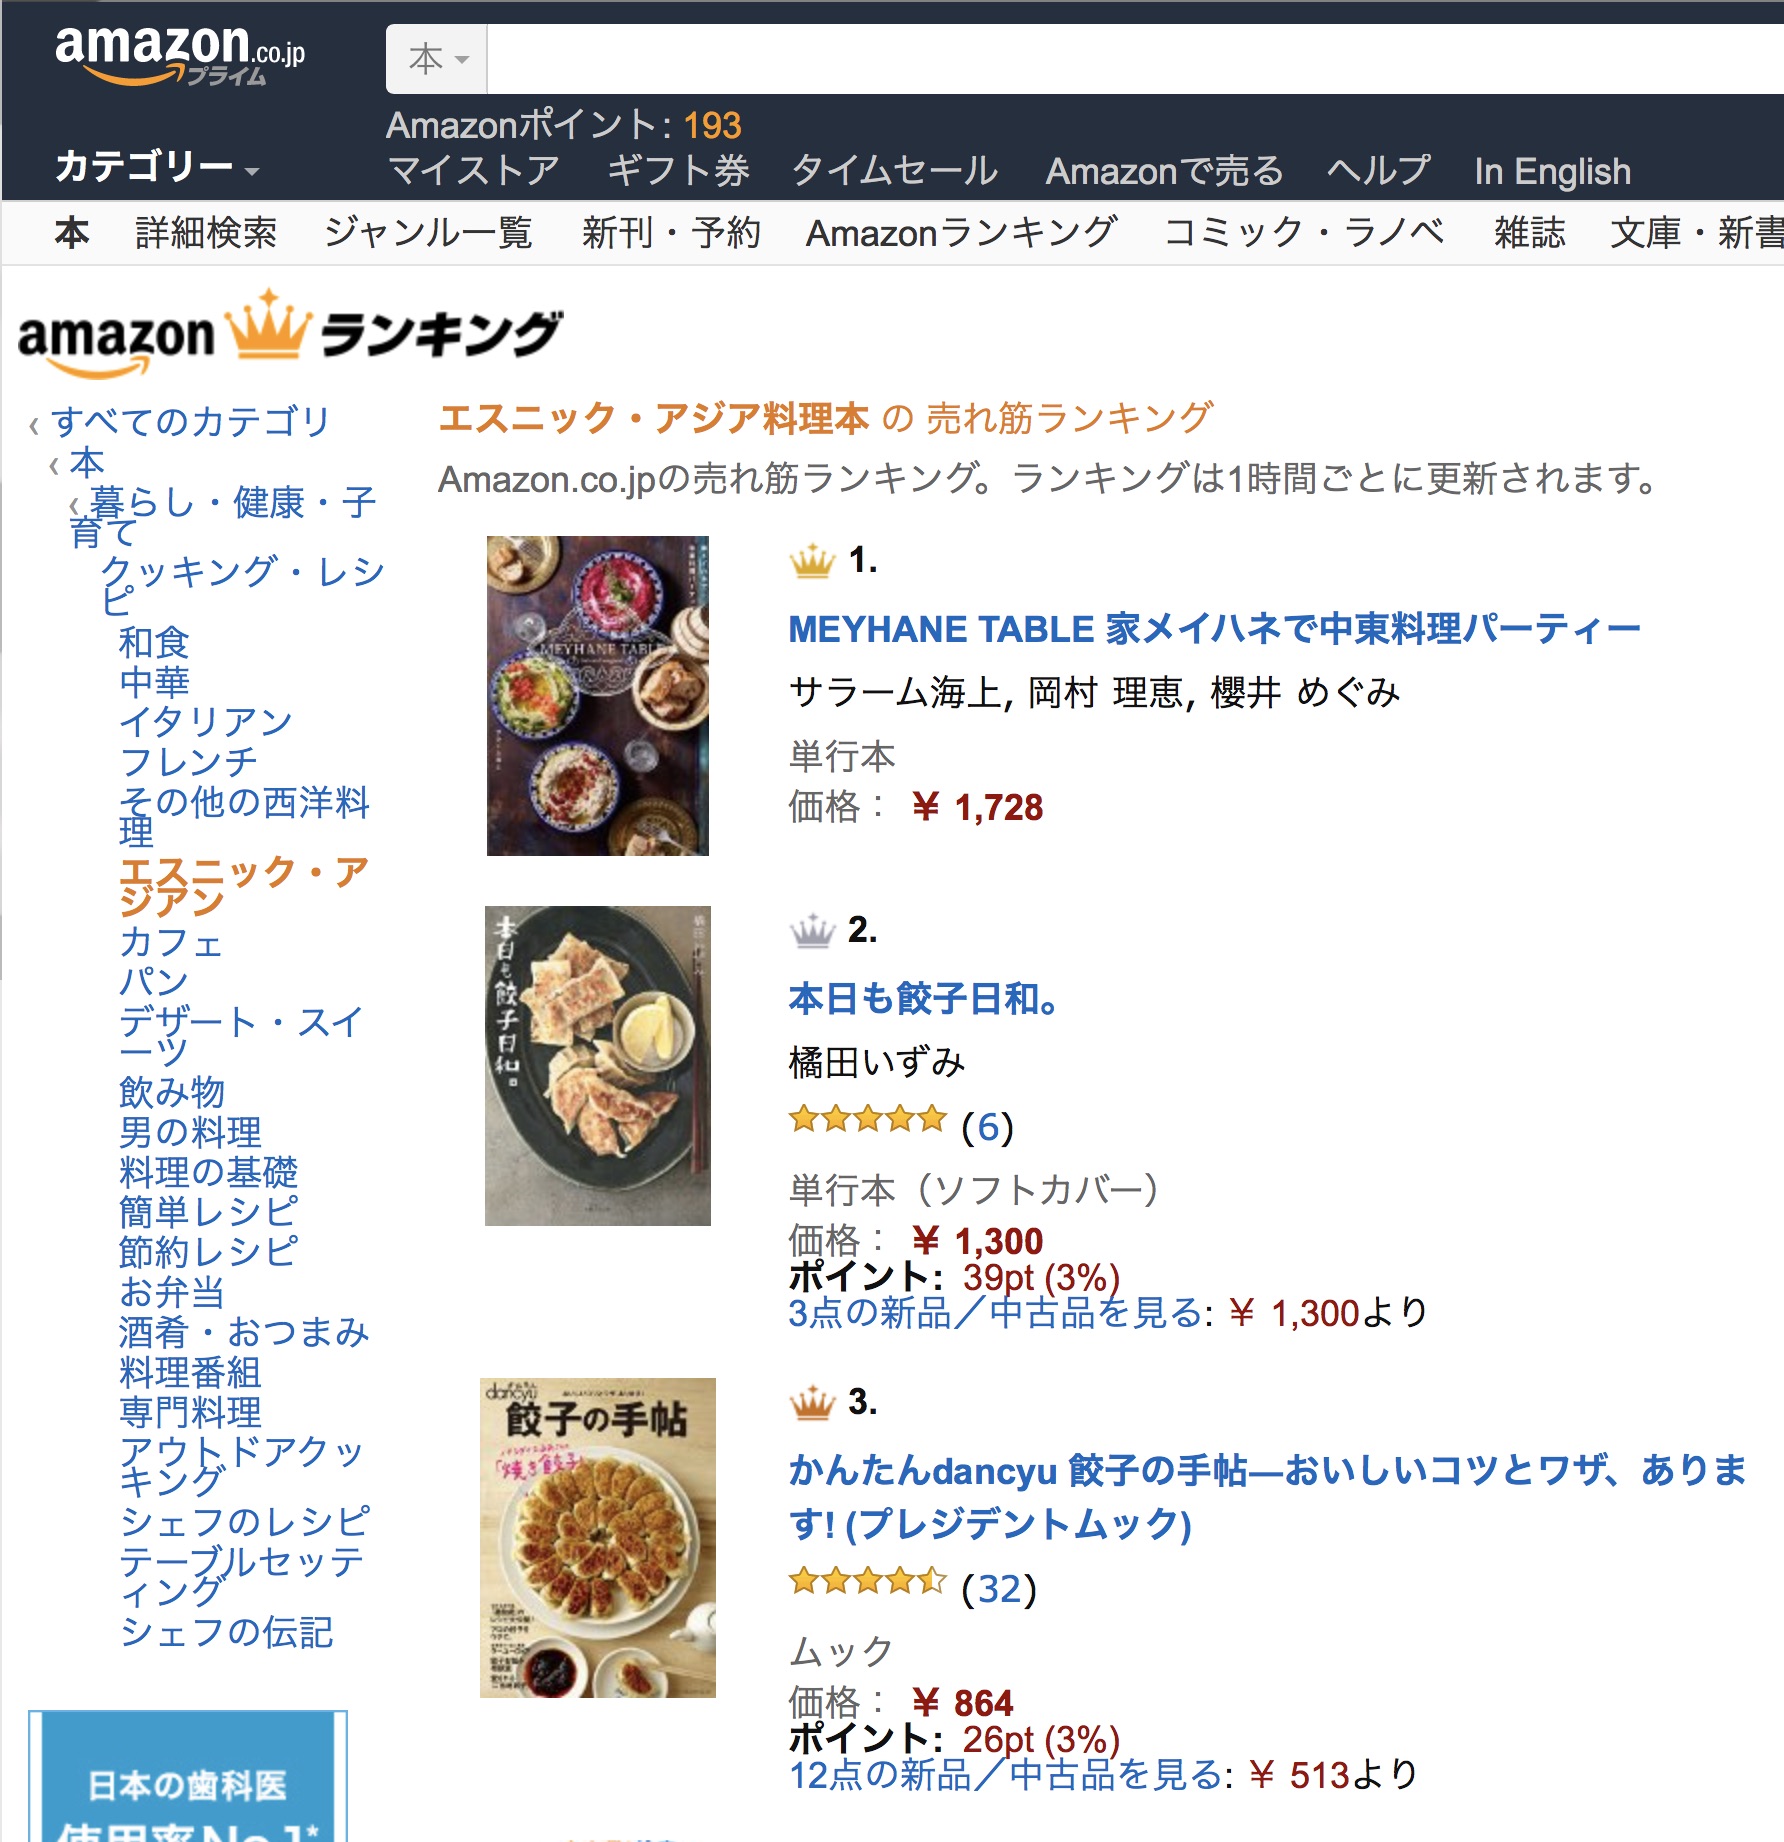 MEYHANE TABLE Amazonのエスニック・アジア料理本 部門で売上げNo.1!!